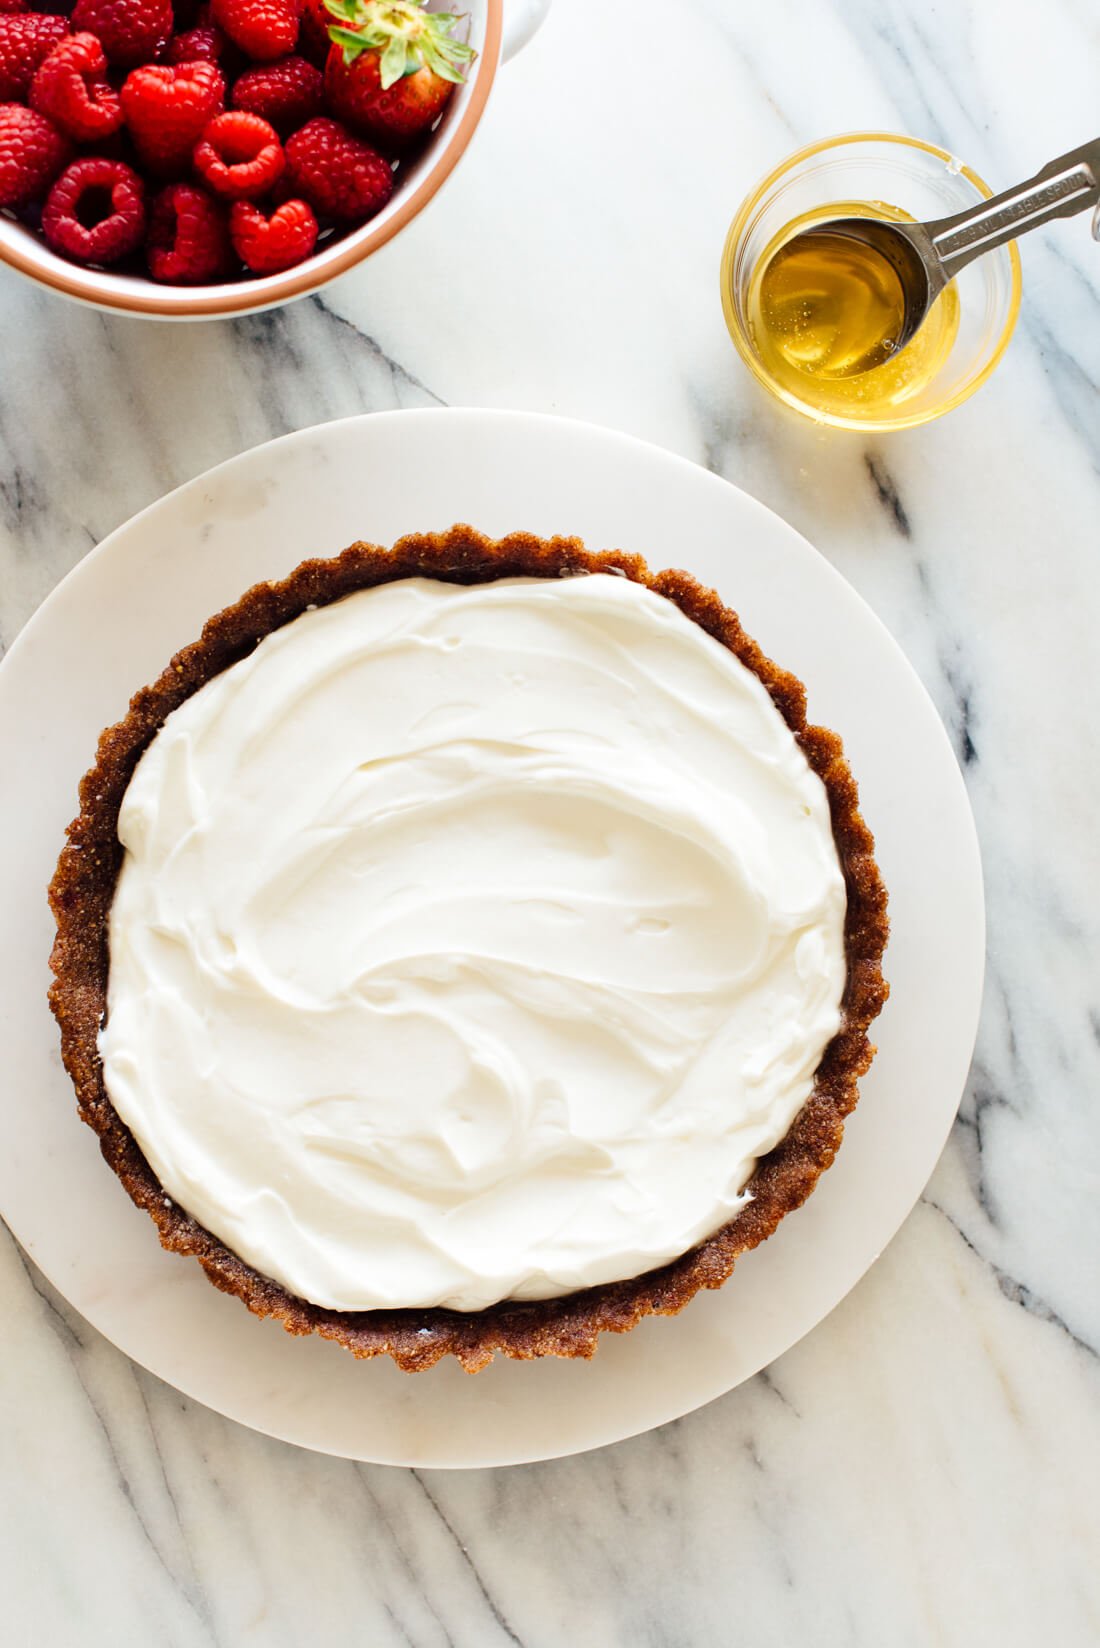 Easy Greek yogurt tart recipe, ready for fruit and honey toppings